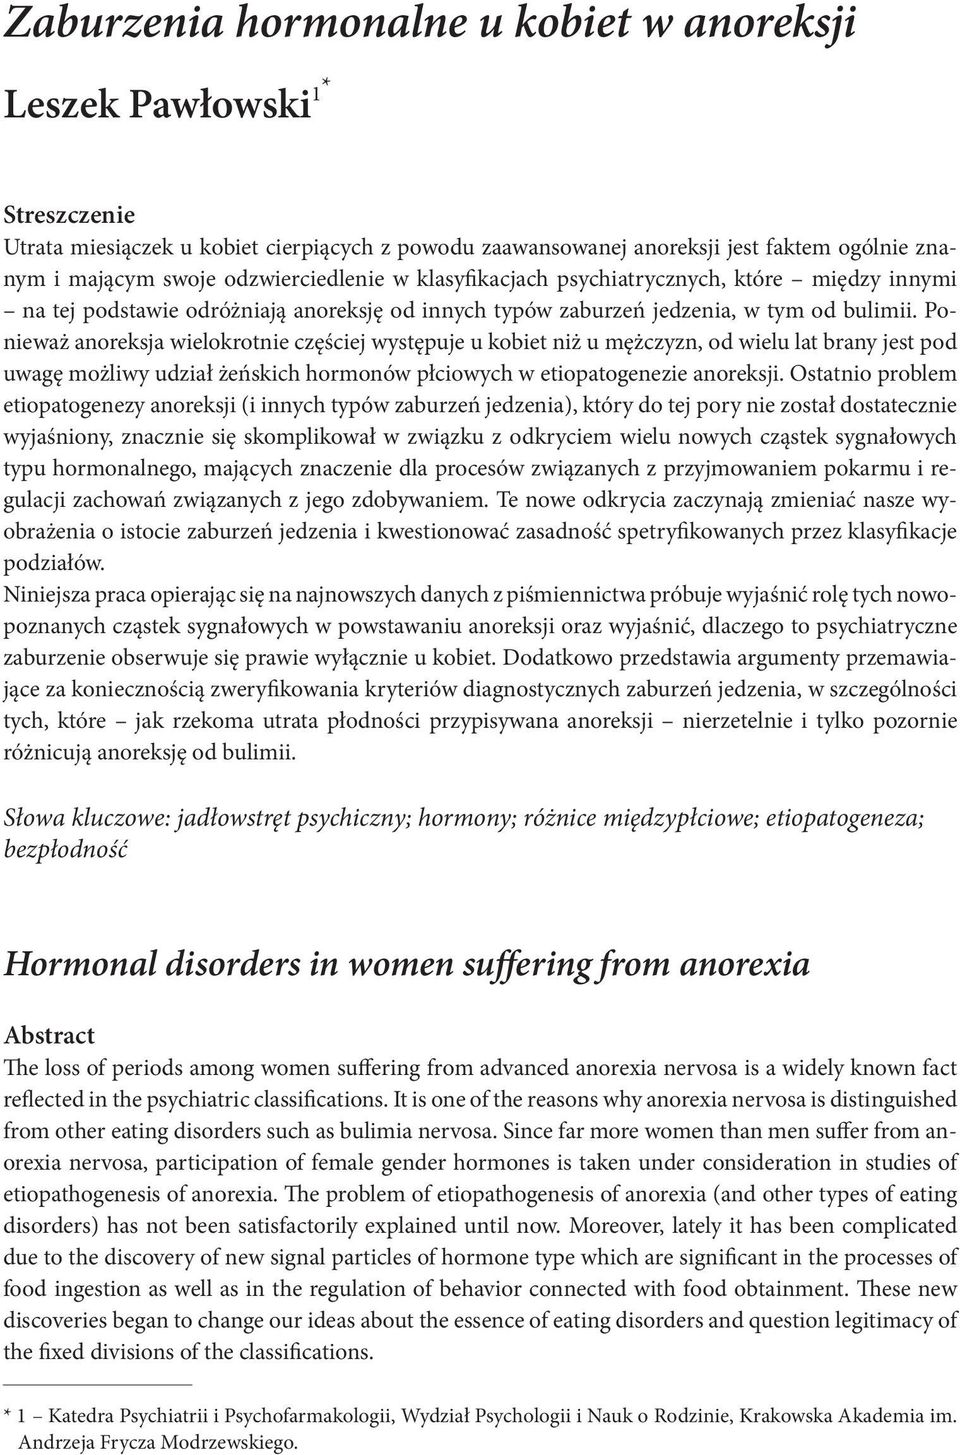 Ponieważ anoreksja wielokrotnie częściej występuje u kobiet niż u mężczyzn, od wielu lat brany jest pod uwagę możliwy udział żeńskich hormonów płciowych w etiopatogenezie anoreksji.